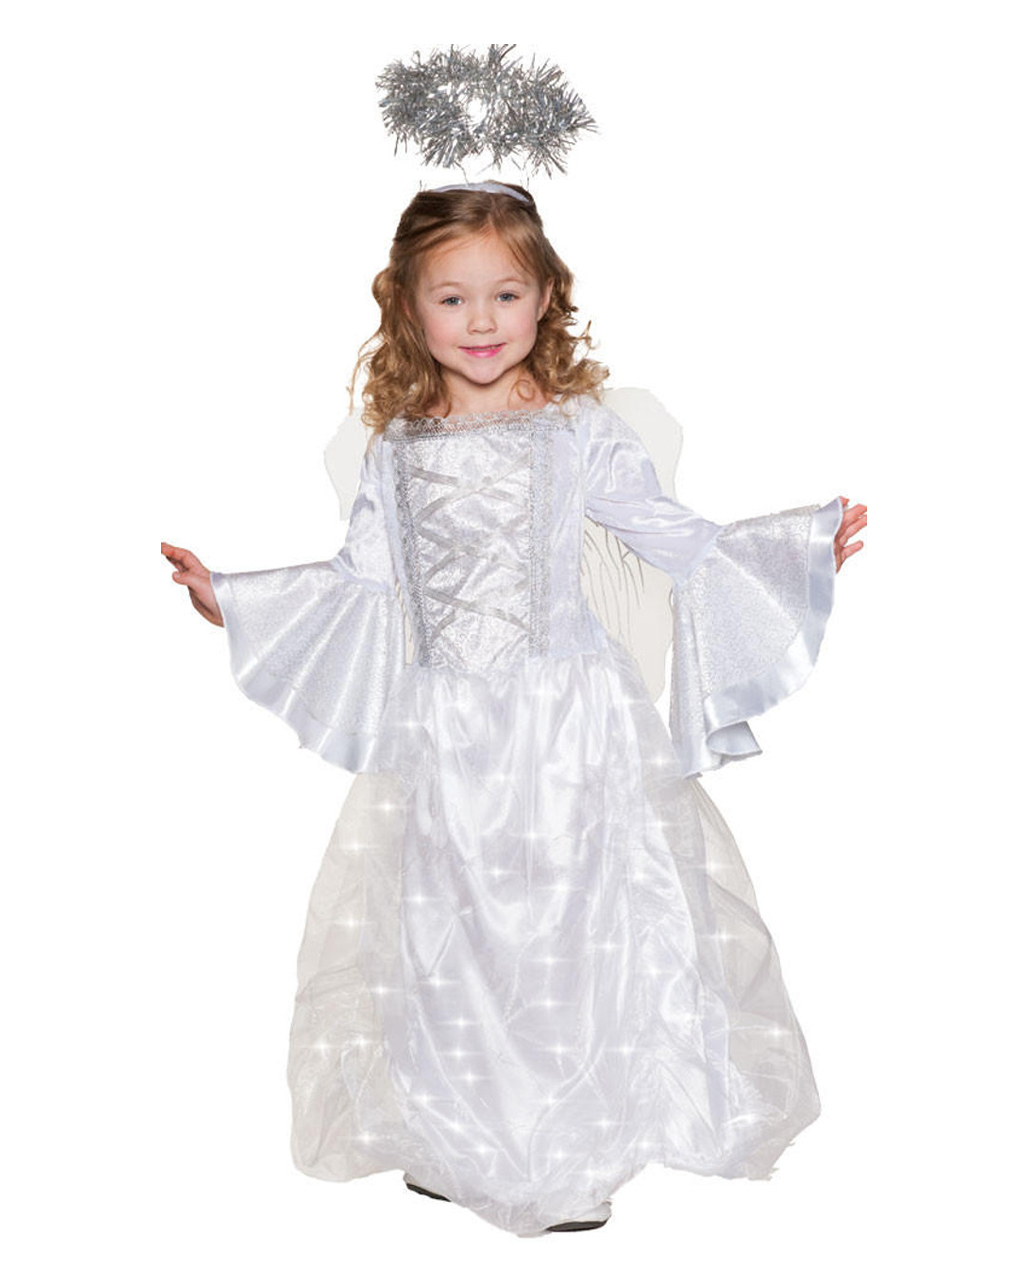 Weißer Engel | Universe Kinder kaufen Kostüm leuchtend Karneval